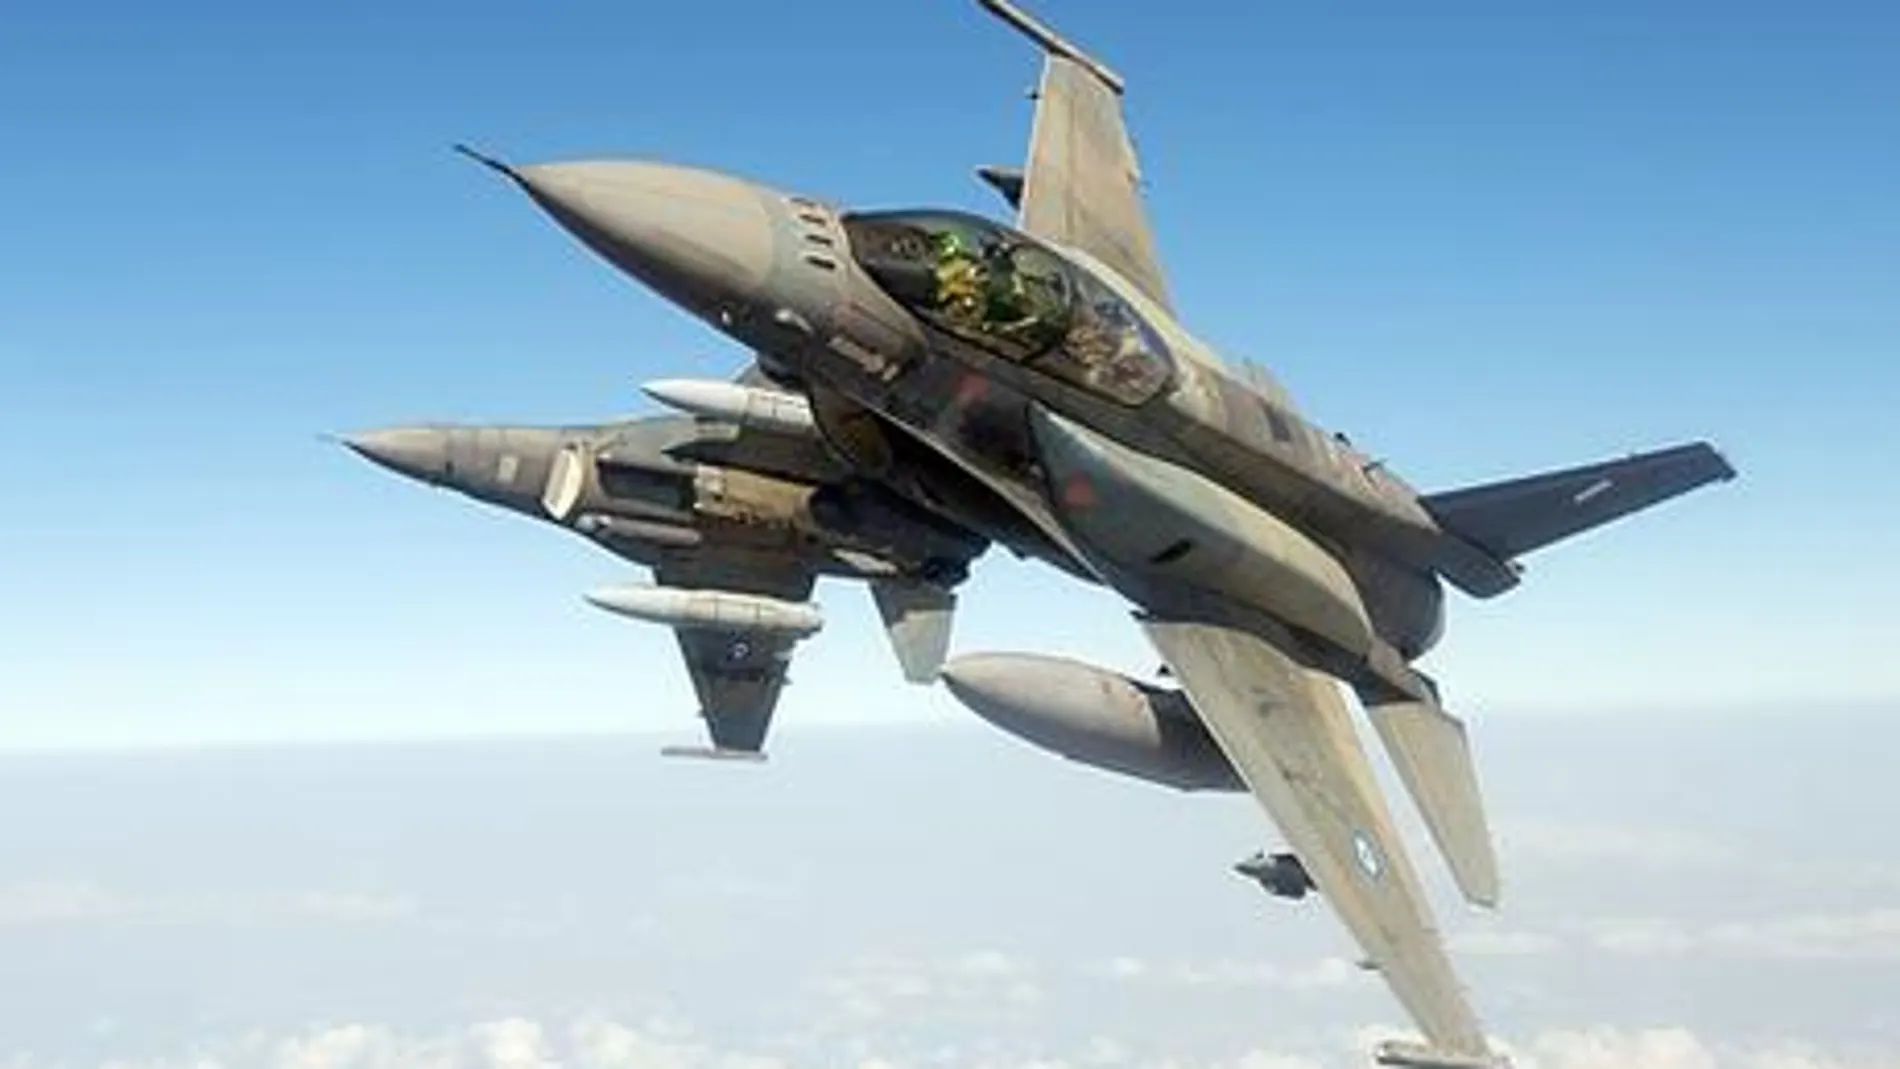 Imagen de dos F-16 en vuelo